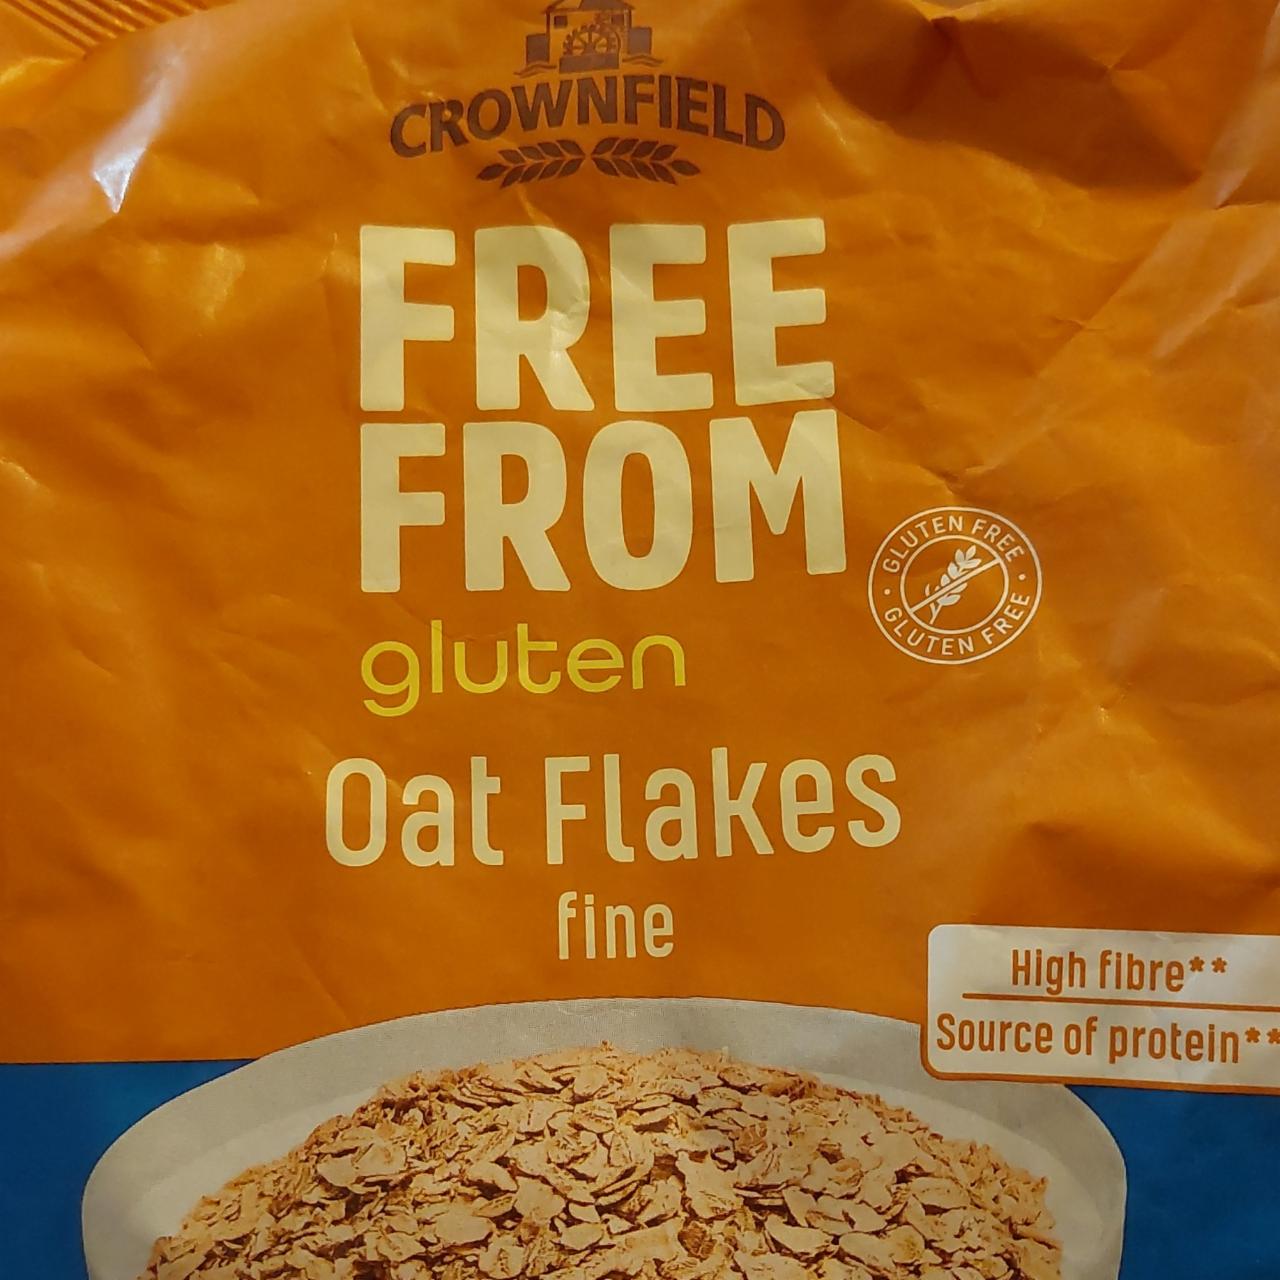 Fotografie - Oat Flakes fine Crownfield Free From Gluten